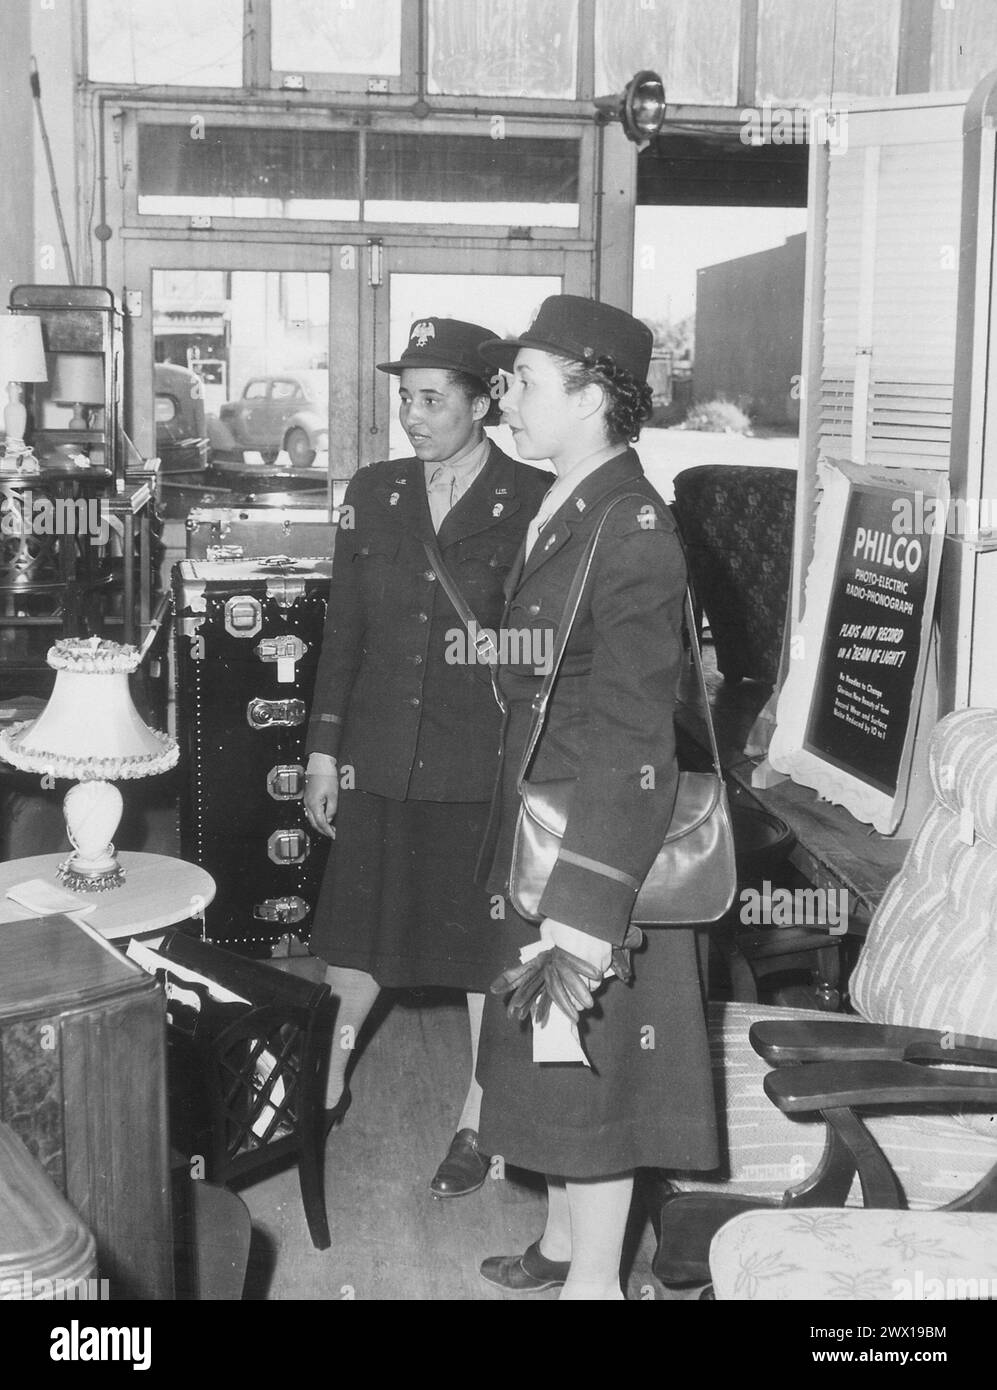 Gli agenti del WAAC vanno a fare shopping... subito dopo il loro arrivo a Fort Huachuca, Arizona, questi due agenti hanno iniziato a comprare lampade e altri accessori necessari nella loro sala ricreativa, CA. 1942 Foto Stock